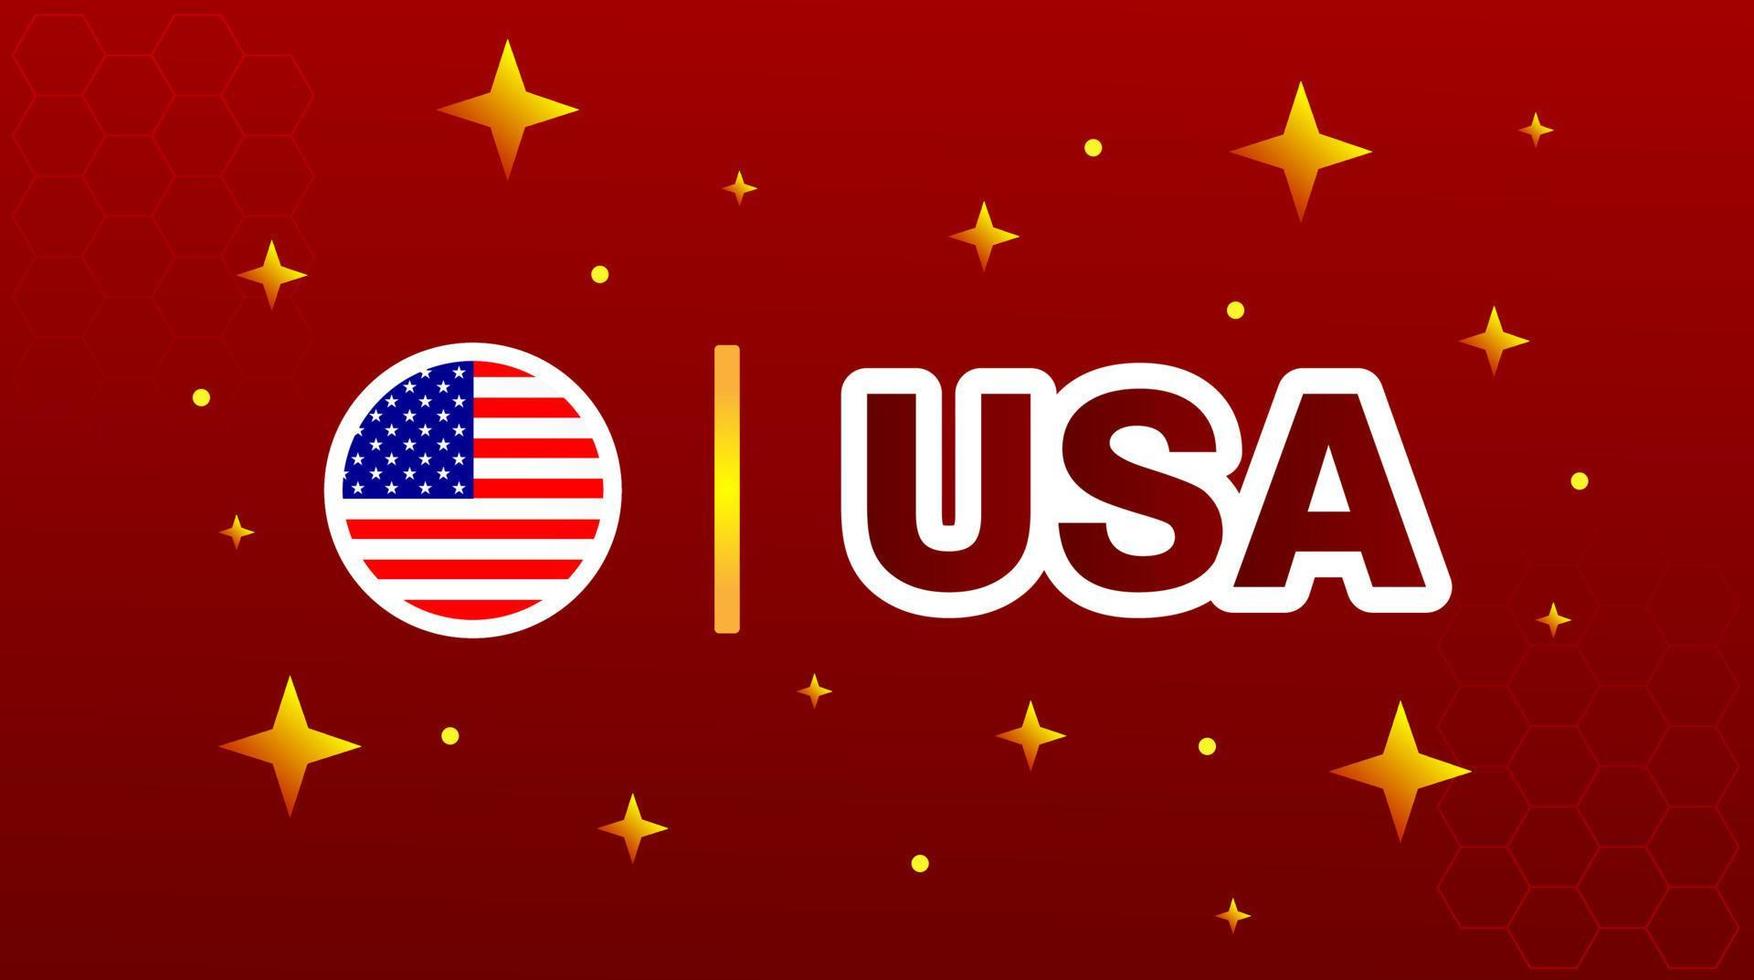 amerikanische flagge mit sternen auf rotem kastanienbraunem hintergrund. vektor